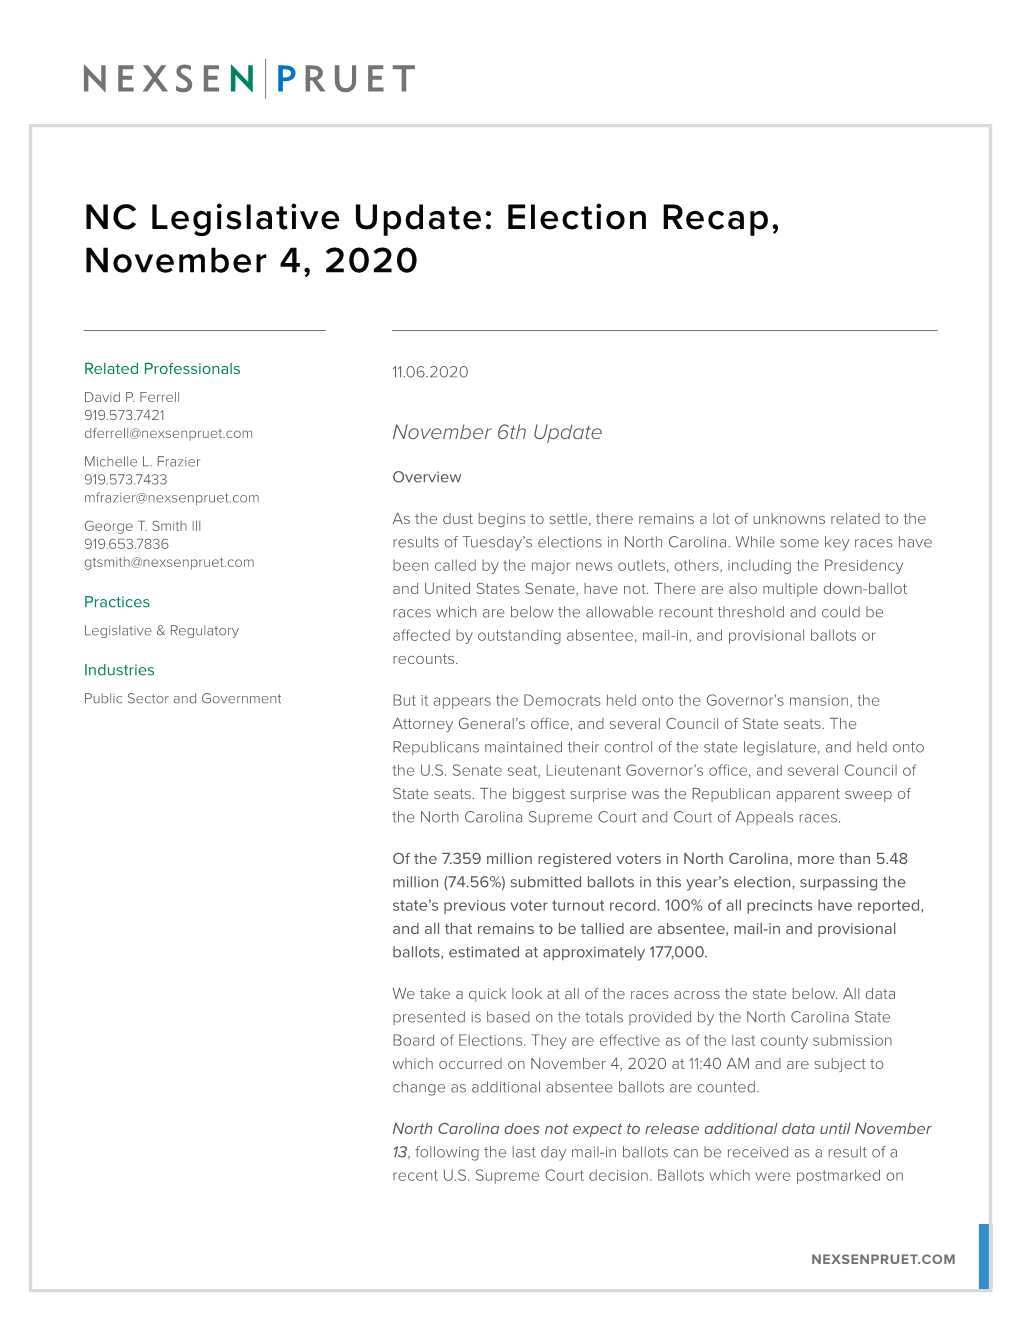 NC Legislative Update: Election Recap, November 4, 2020